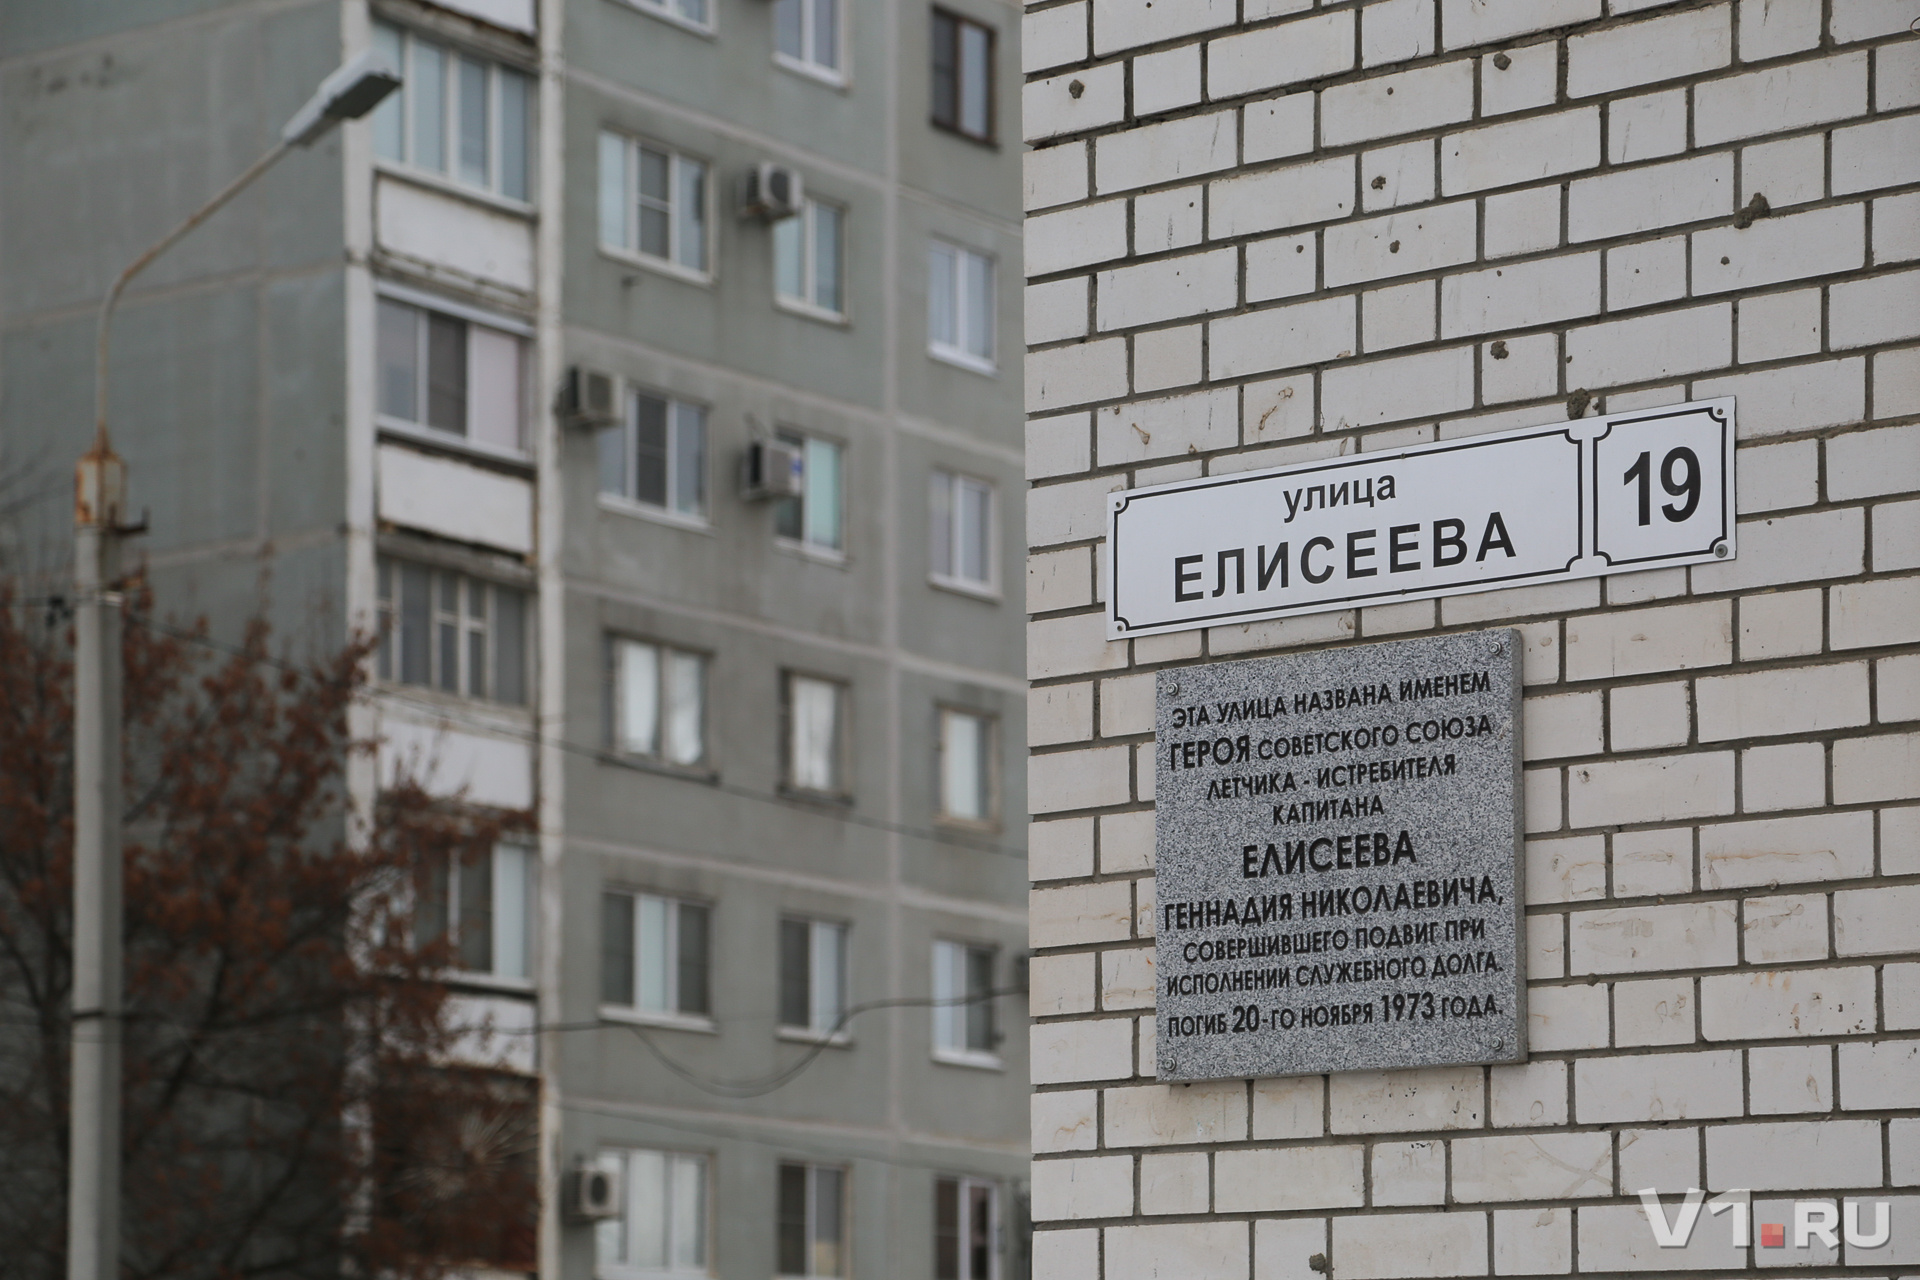 О подвиге истребителя напоминают мемориальные доски на улице Елисеева и в здании ДОСААФ